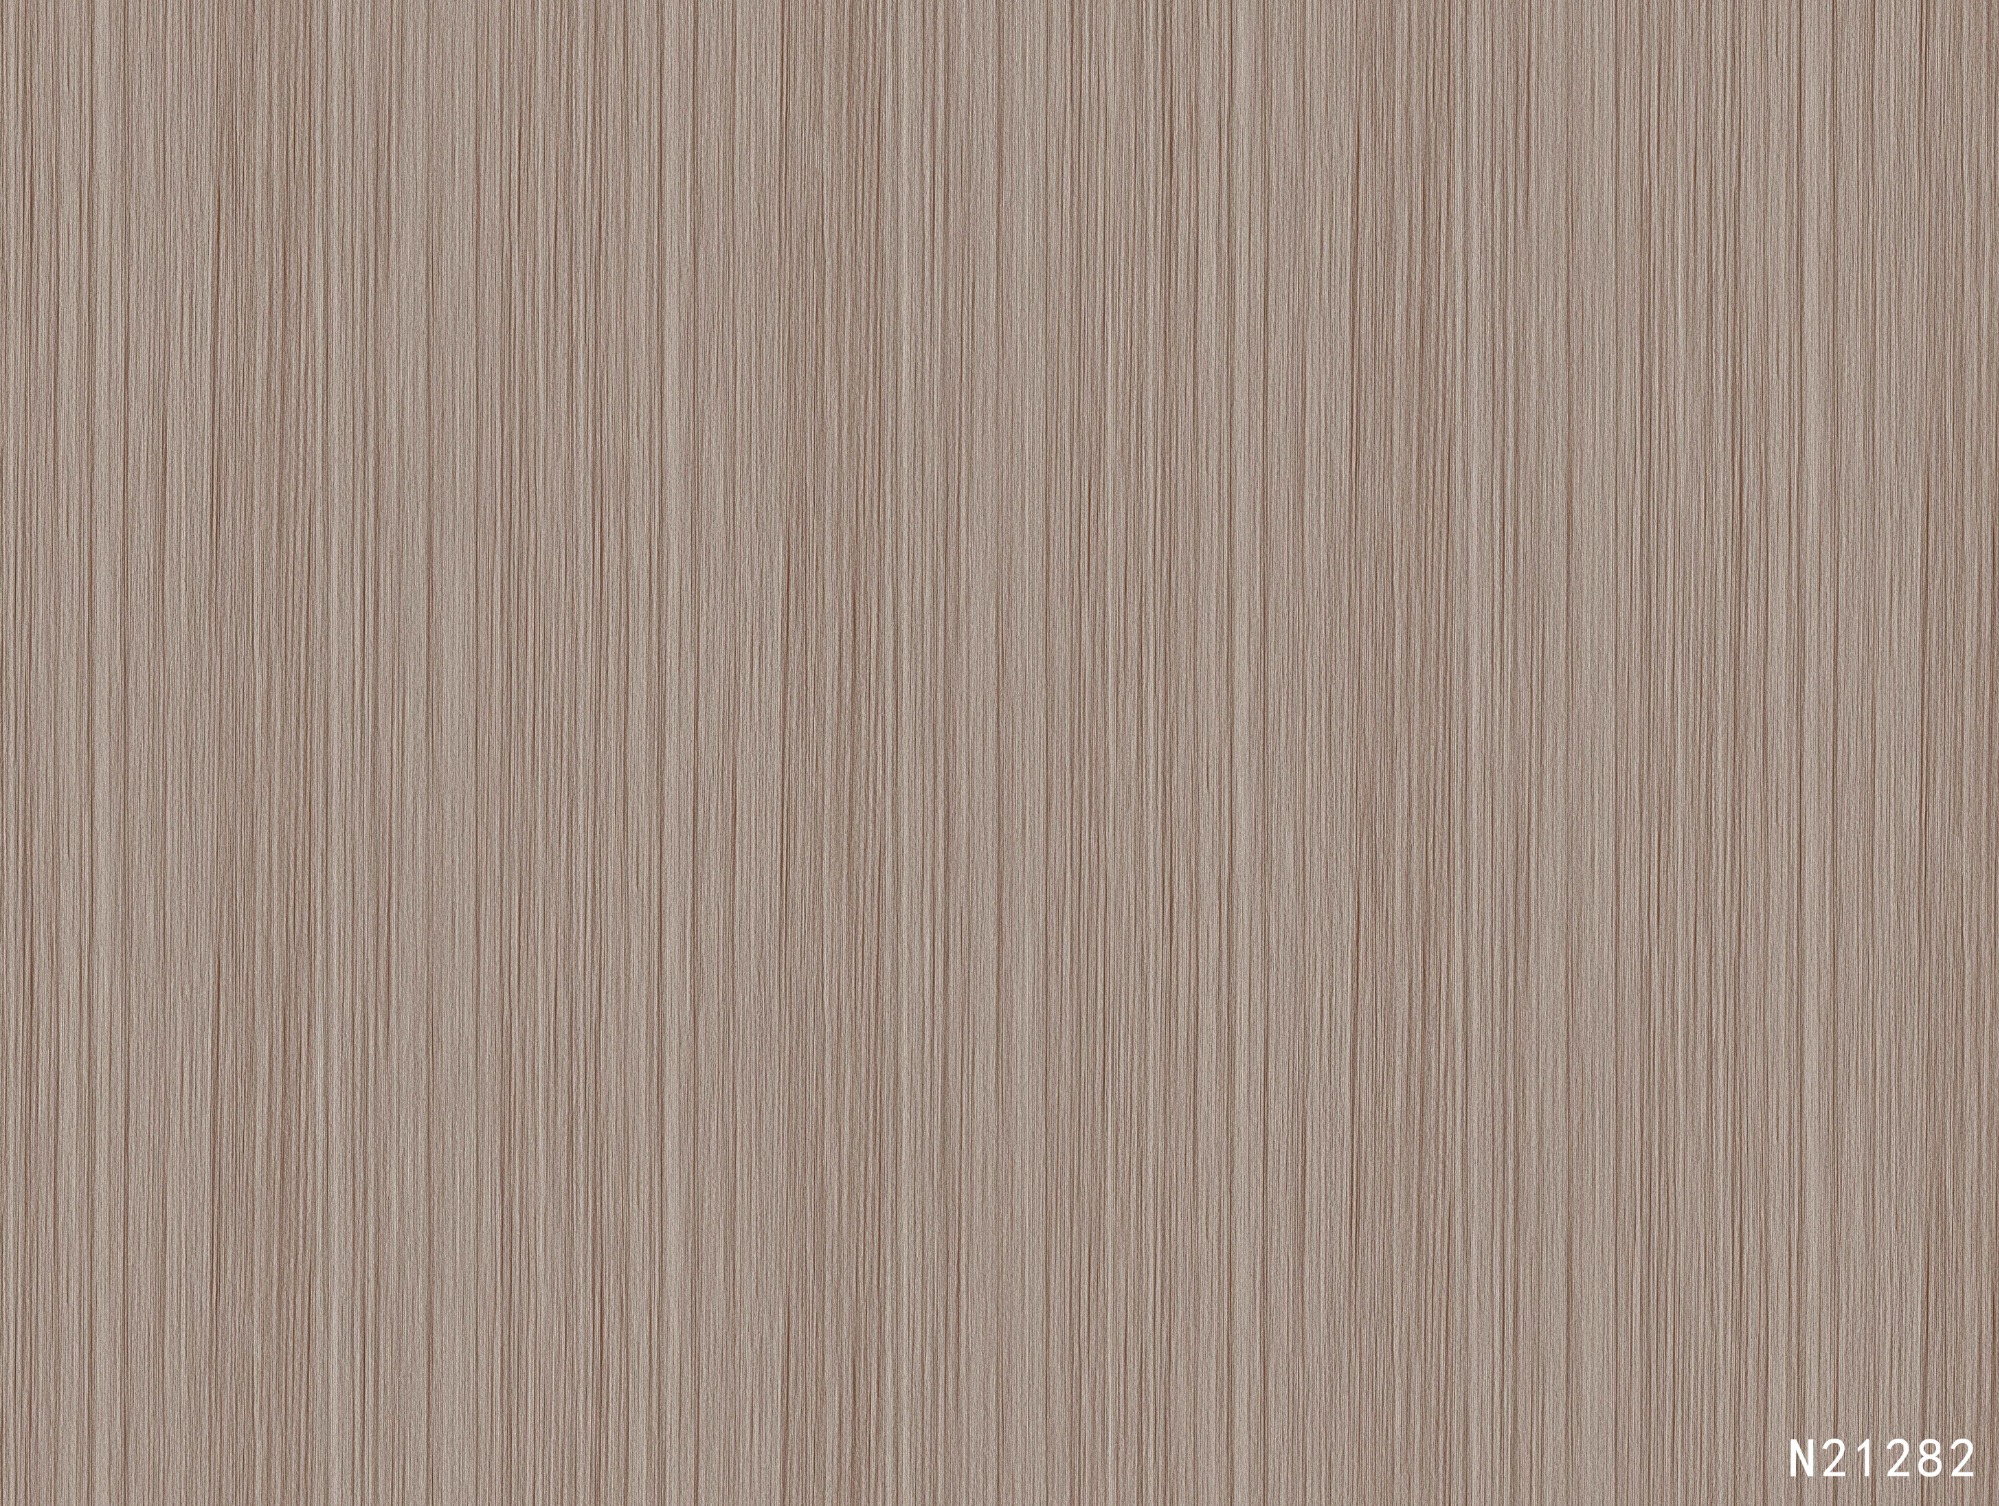 N21282 Melamine paper with wood grain